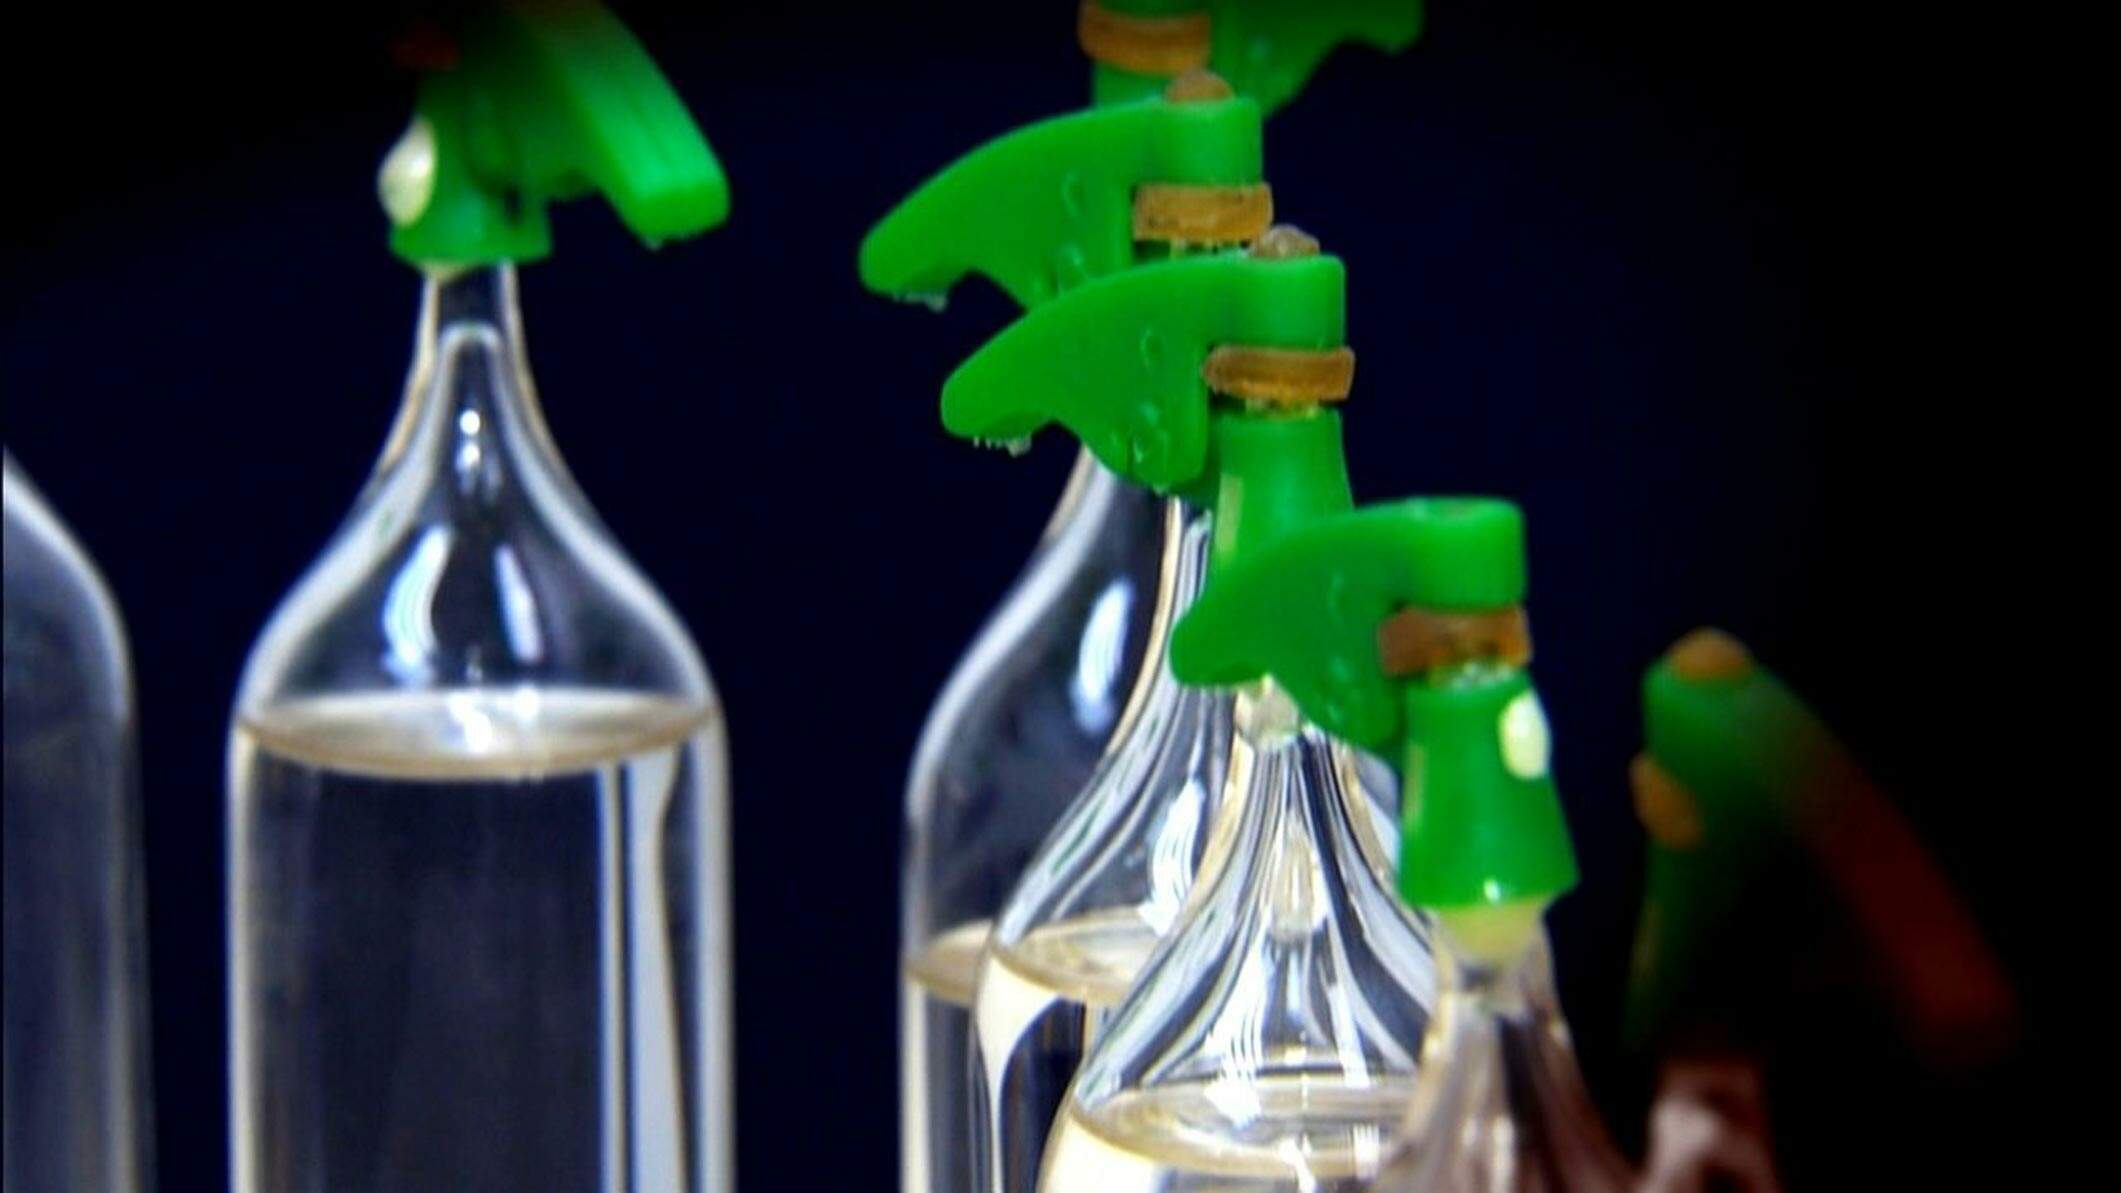 Lança-perfume: um dossiê completo sobre a droga - Hospital Santa Mônica